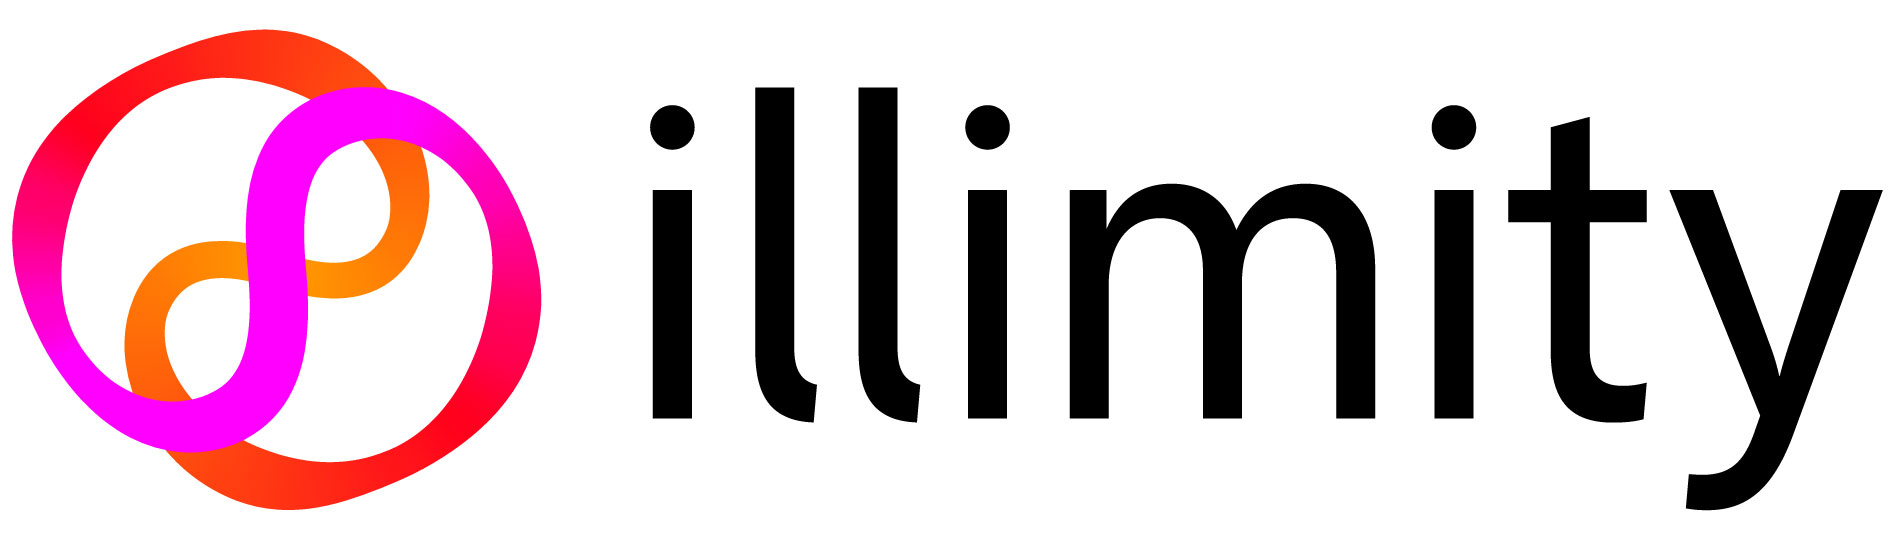 Logo illimity